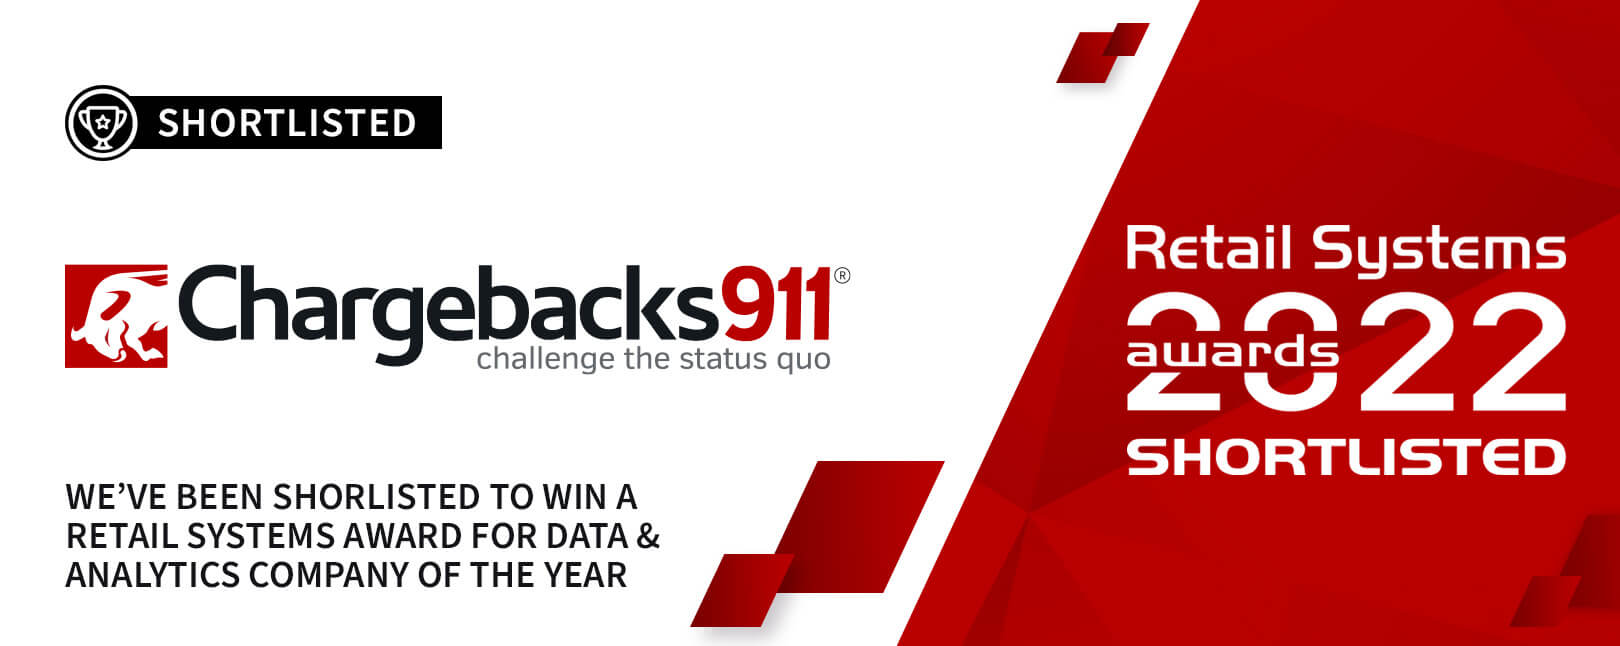 Chargebacks911® Wins 7th Consecutive CNP “Customer Choice” Award!